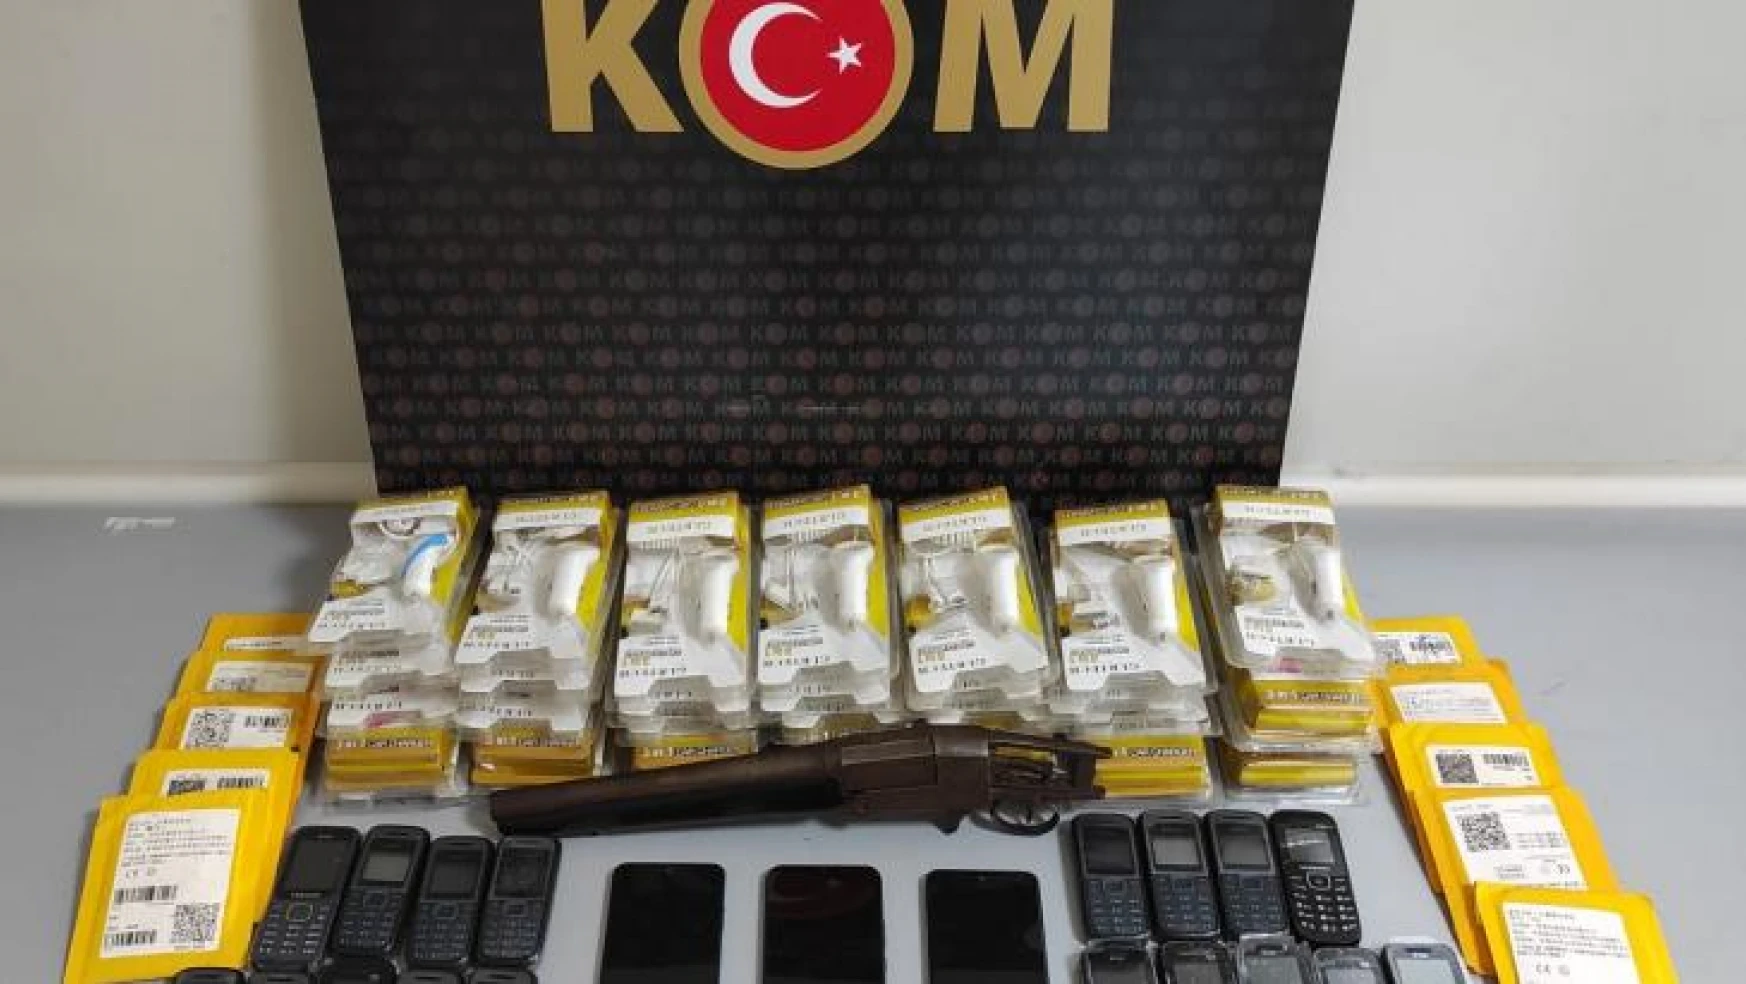 Samsun'da kaçak telefon ve aksesuarları ele geçirildi